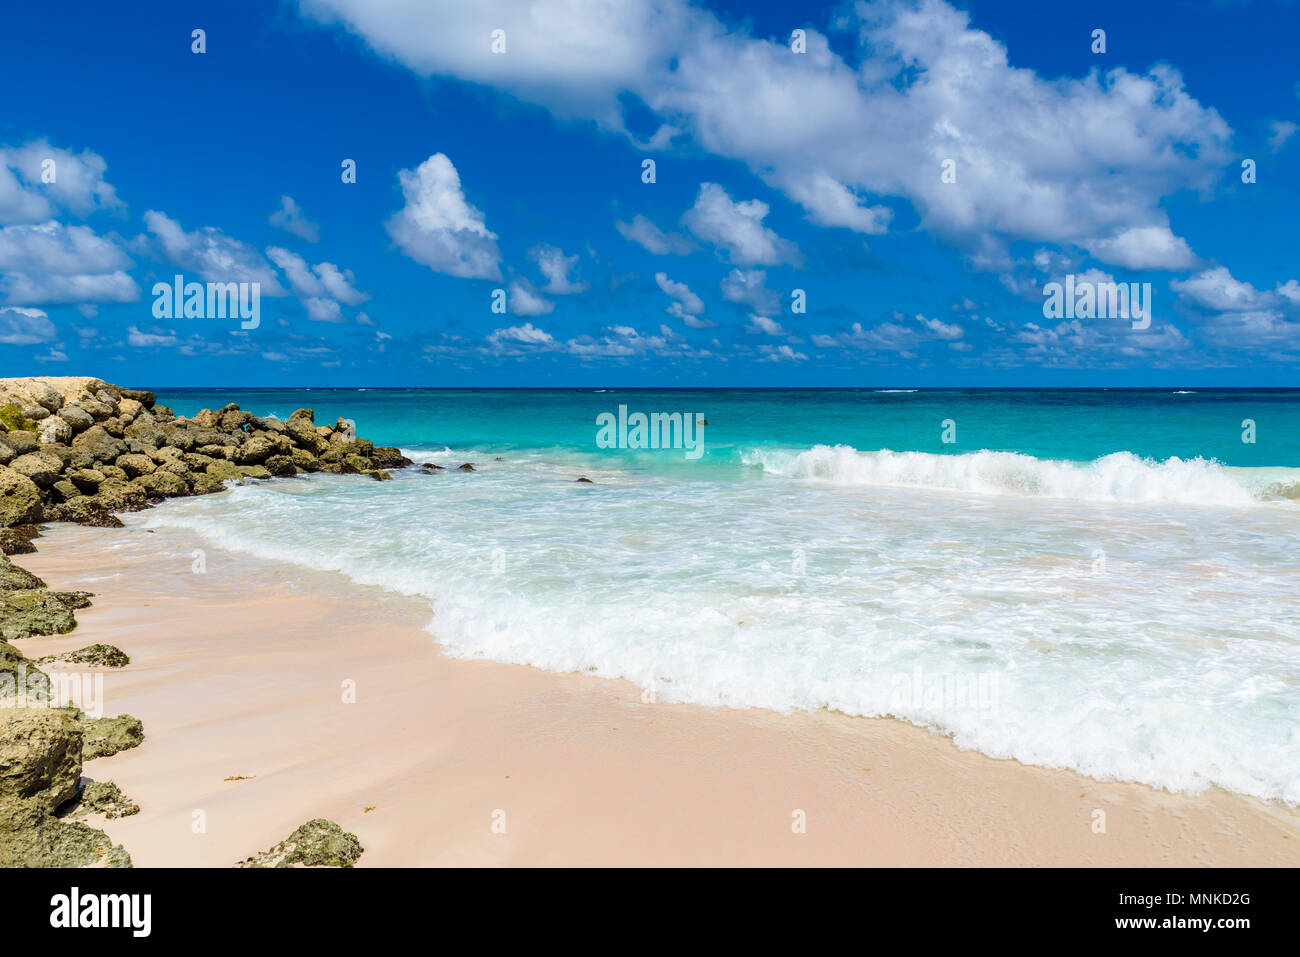 Crane Beach - spiaggia tropicale sull'isola caraibica di Barbados. Si tratta di una destinazione paradiso con una spiaggia di sabbia bianca e mare turquoiuse. Foto Stock